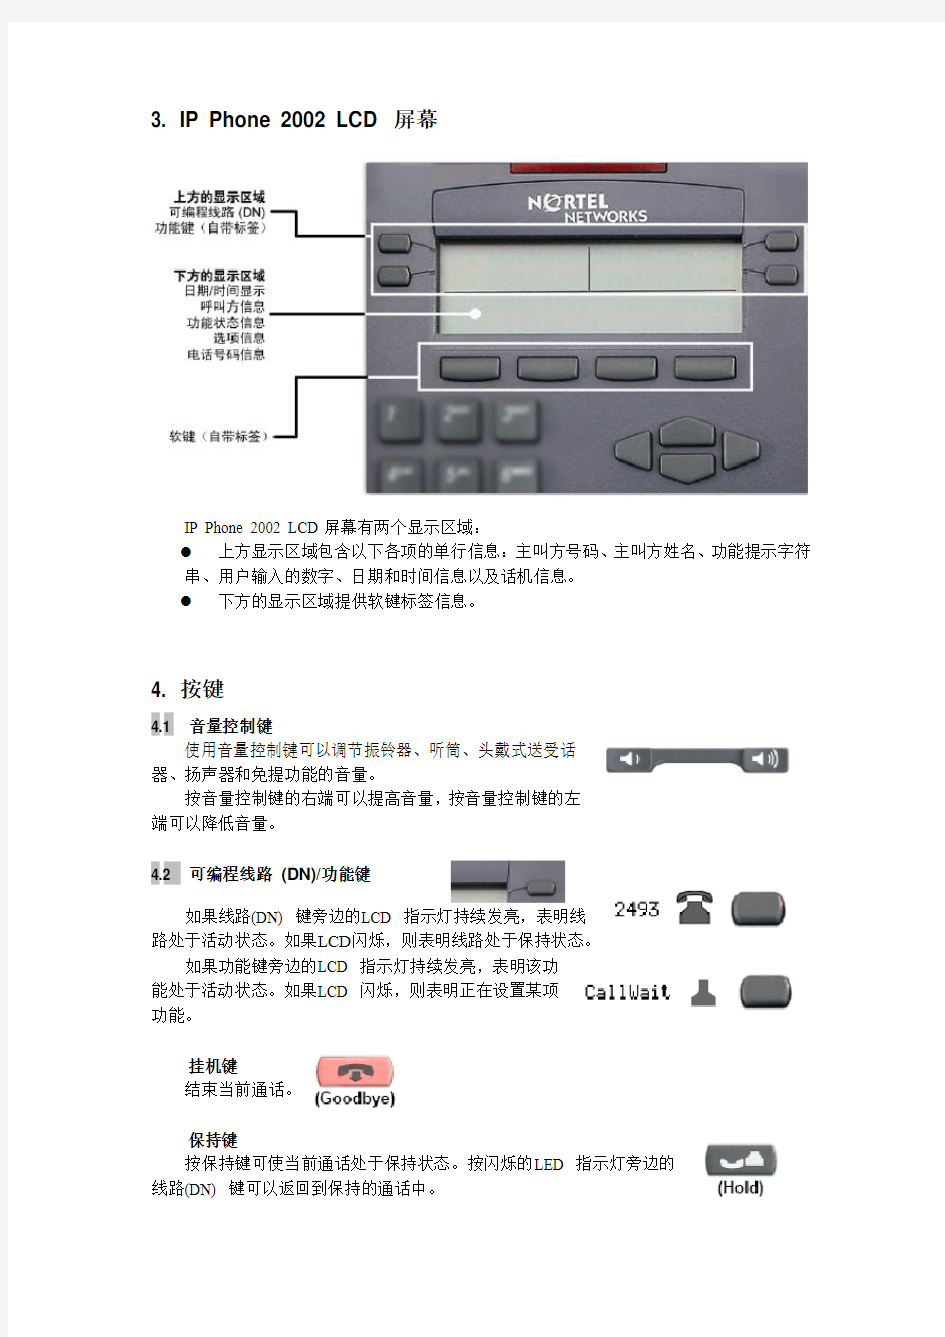 北电IP Phone 2002 安装步骤及操作说明